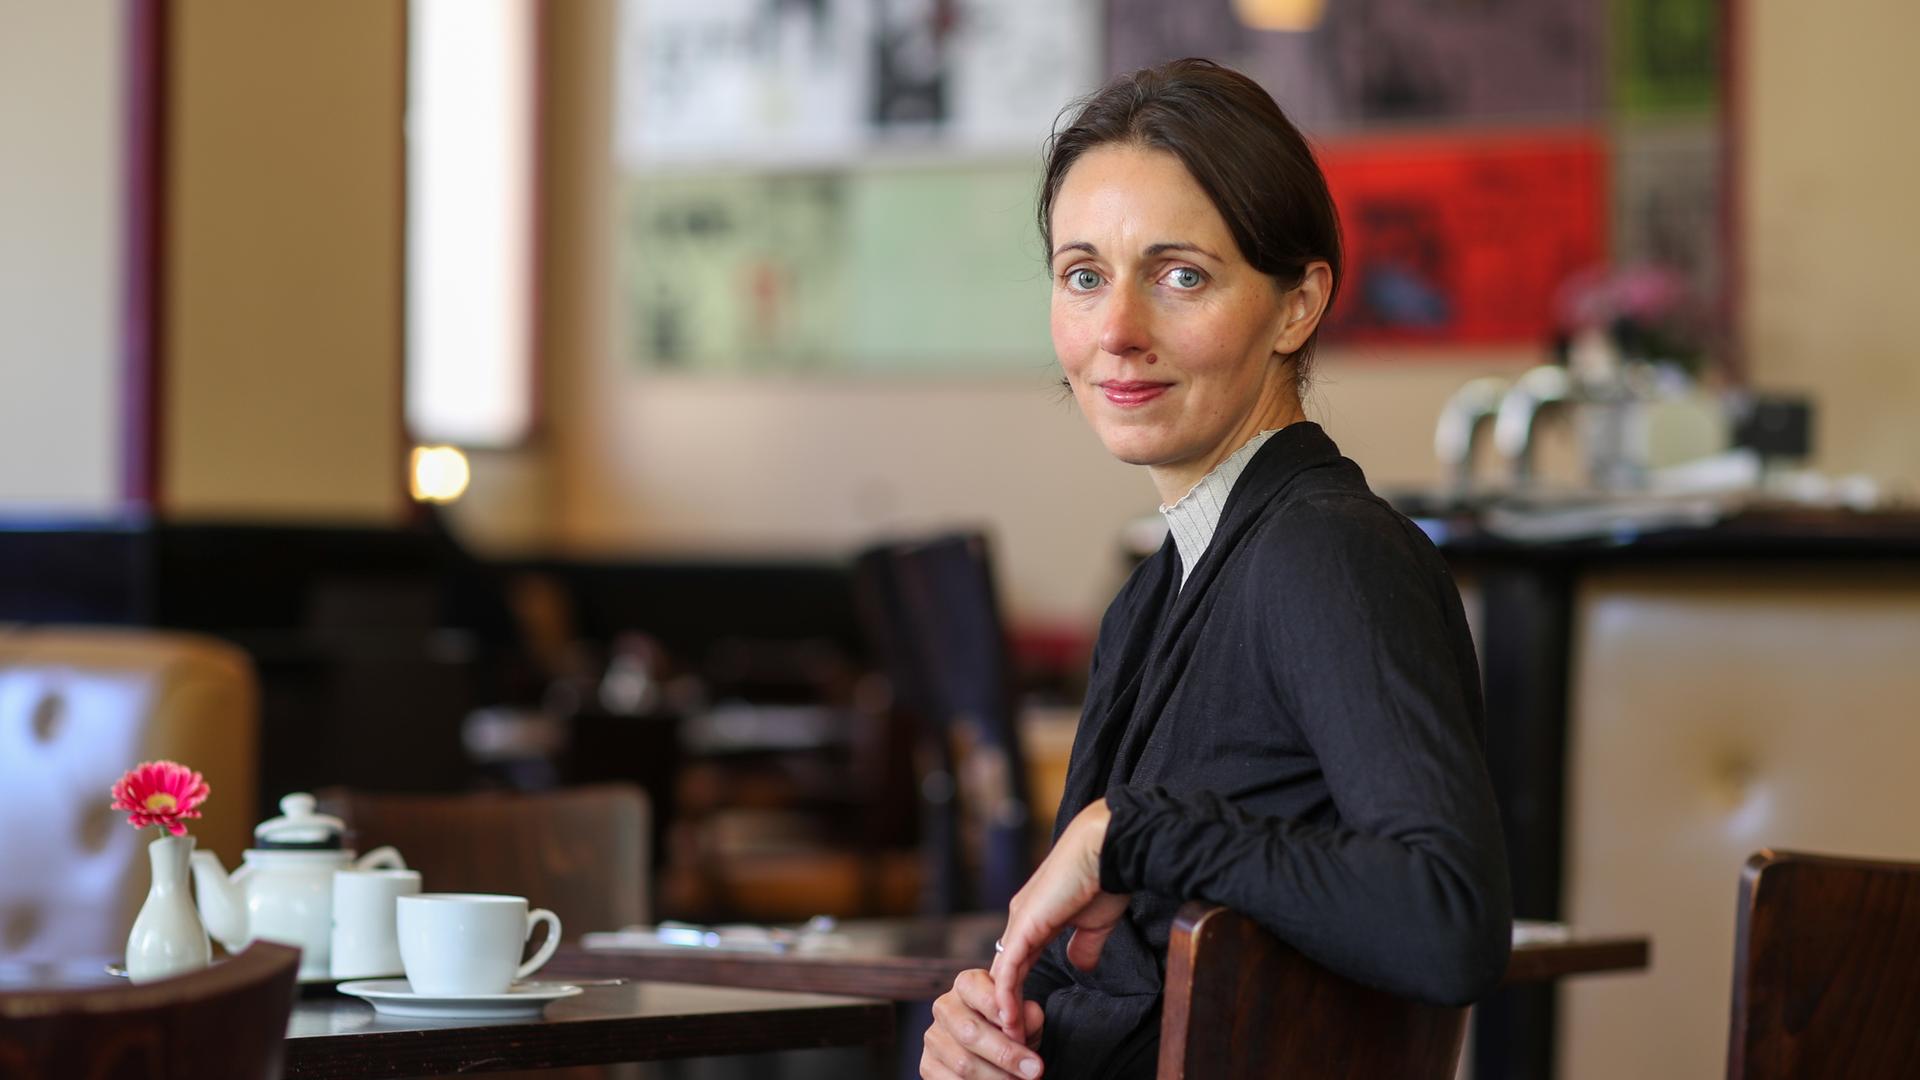 Die deutsche Schriftstellerin Daniela Krien in einem Café.